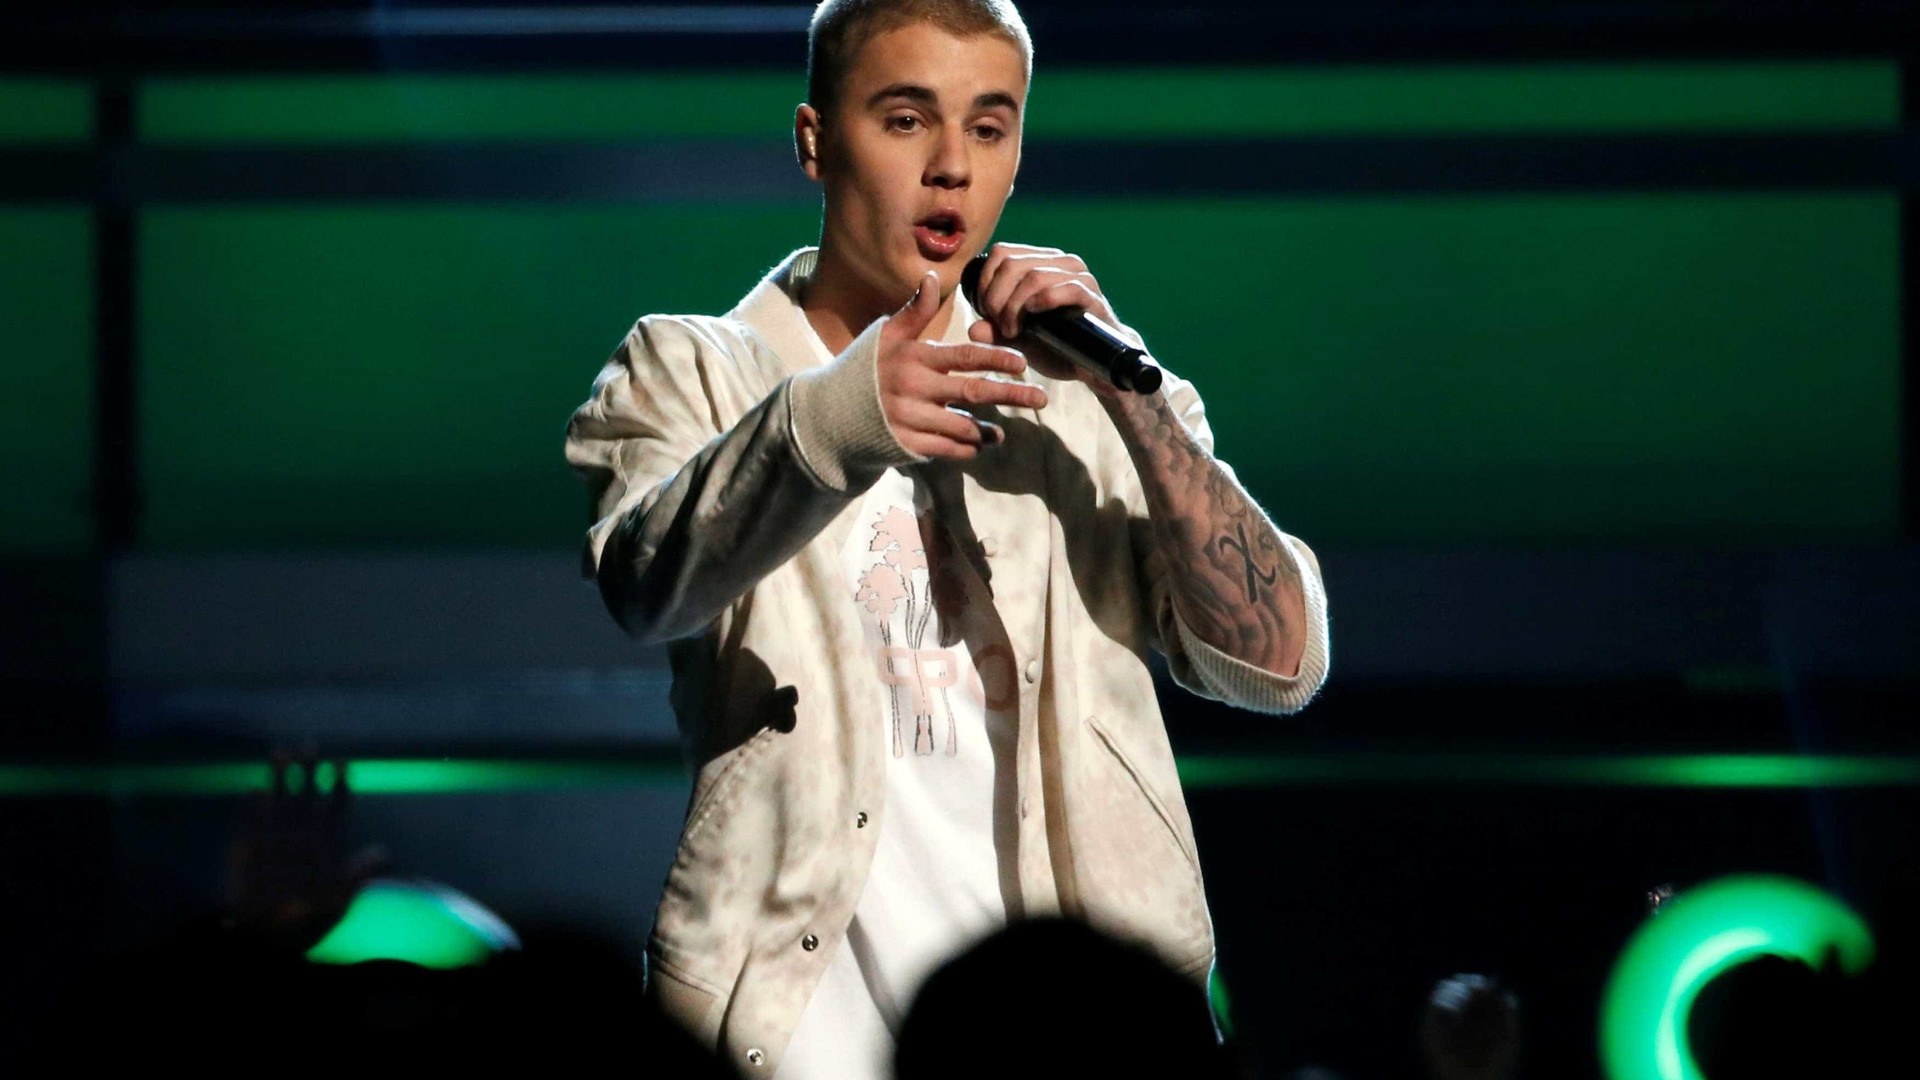 Justin Bieber põe mansão de 8,5 milhões de dólares à venda no Instagram